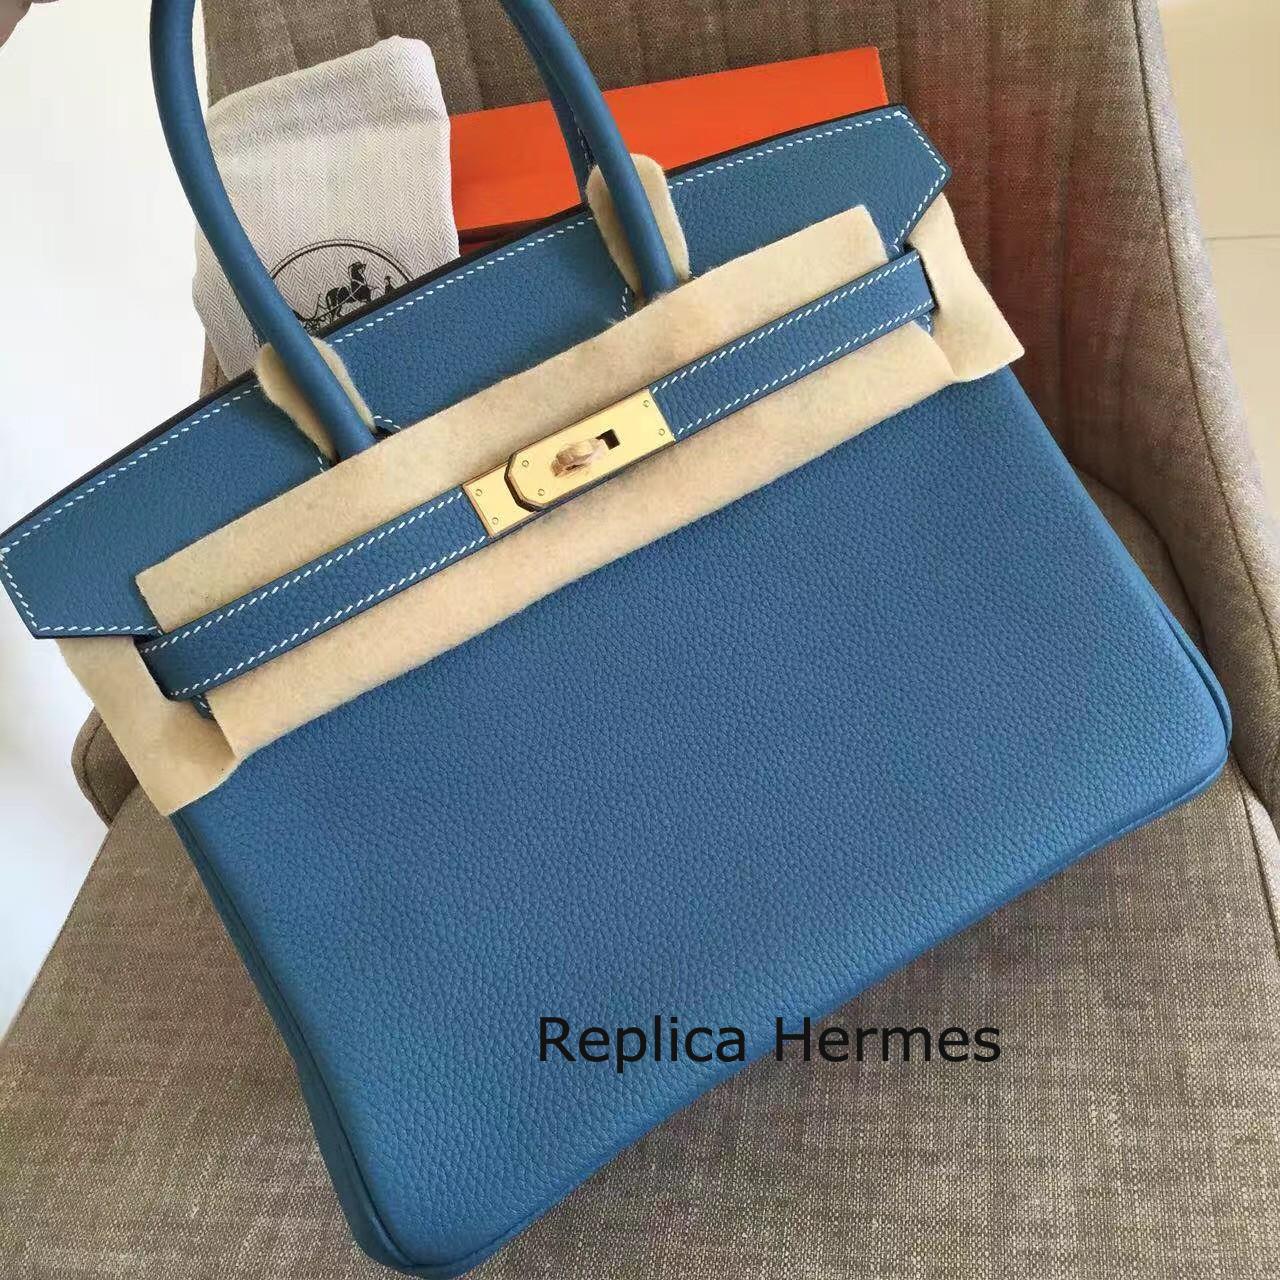 Replica Hermes Blue Jean Clemence Birkin 35cm Handmade Bag